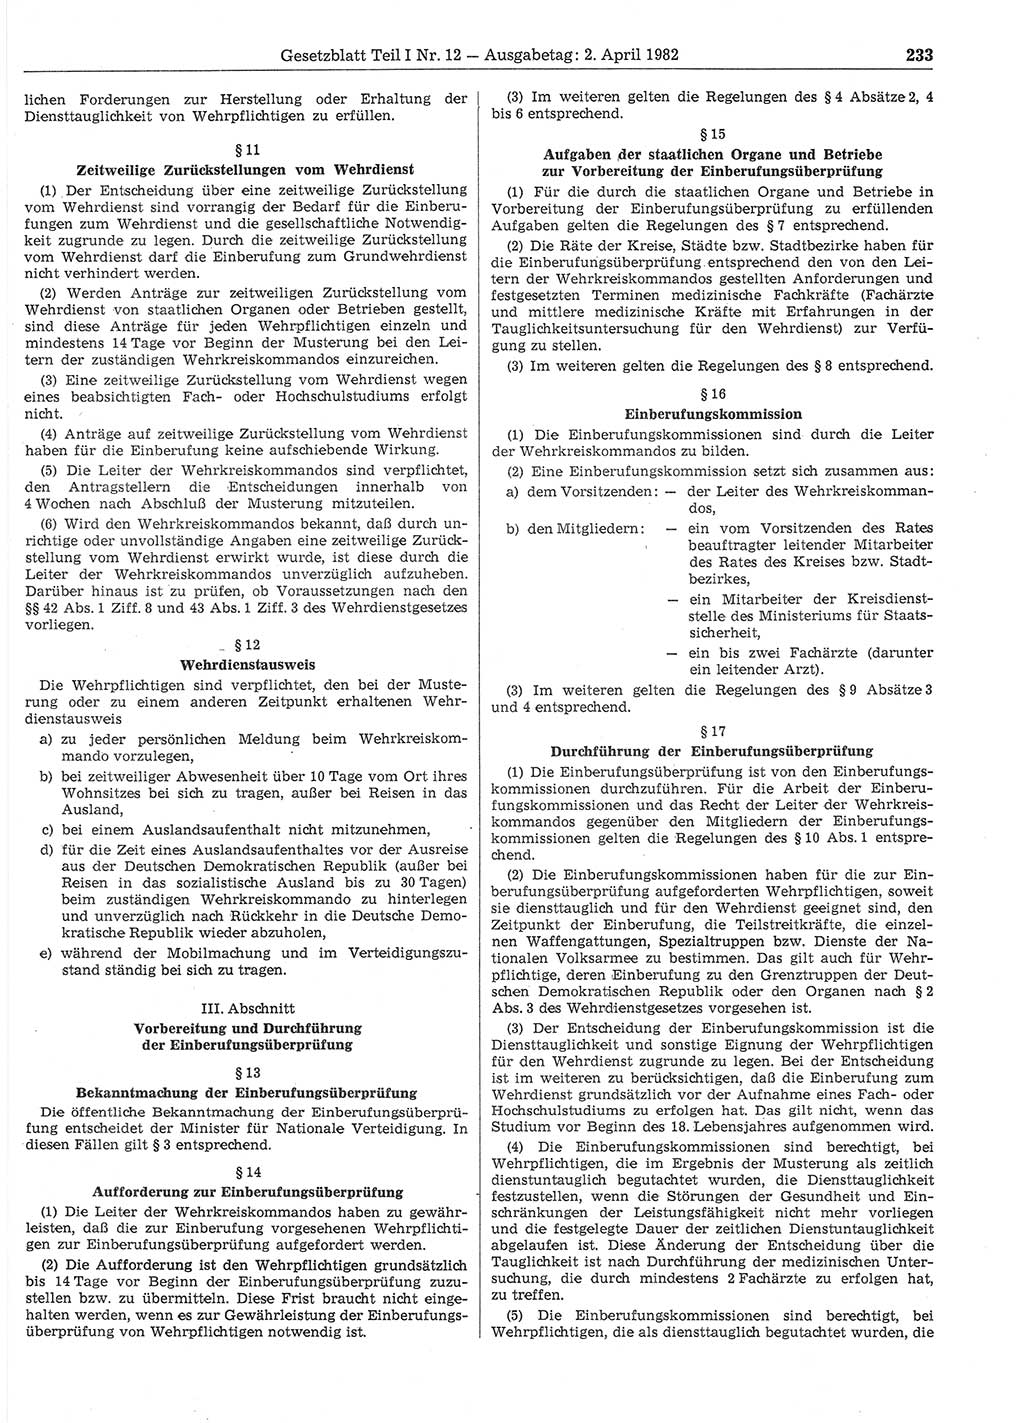 Gesetzblatt (GBl.) der Deutschen Demokratischen Republik (DDR) Teil Ⅰ 1982, Seite 233 (GBl. DDR Ⅰ 1982, S. 233)